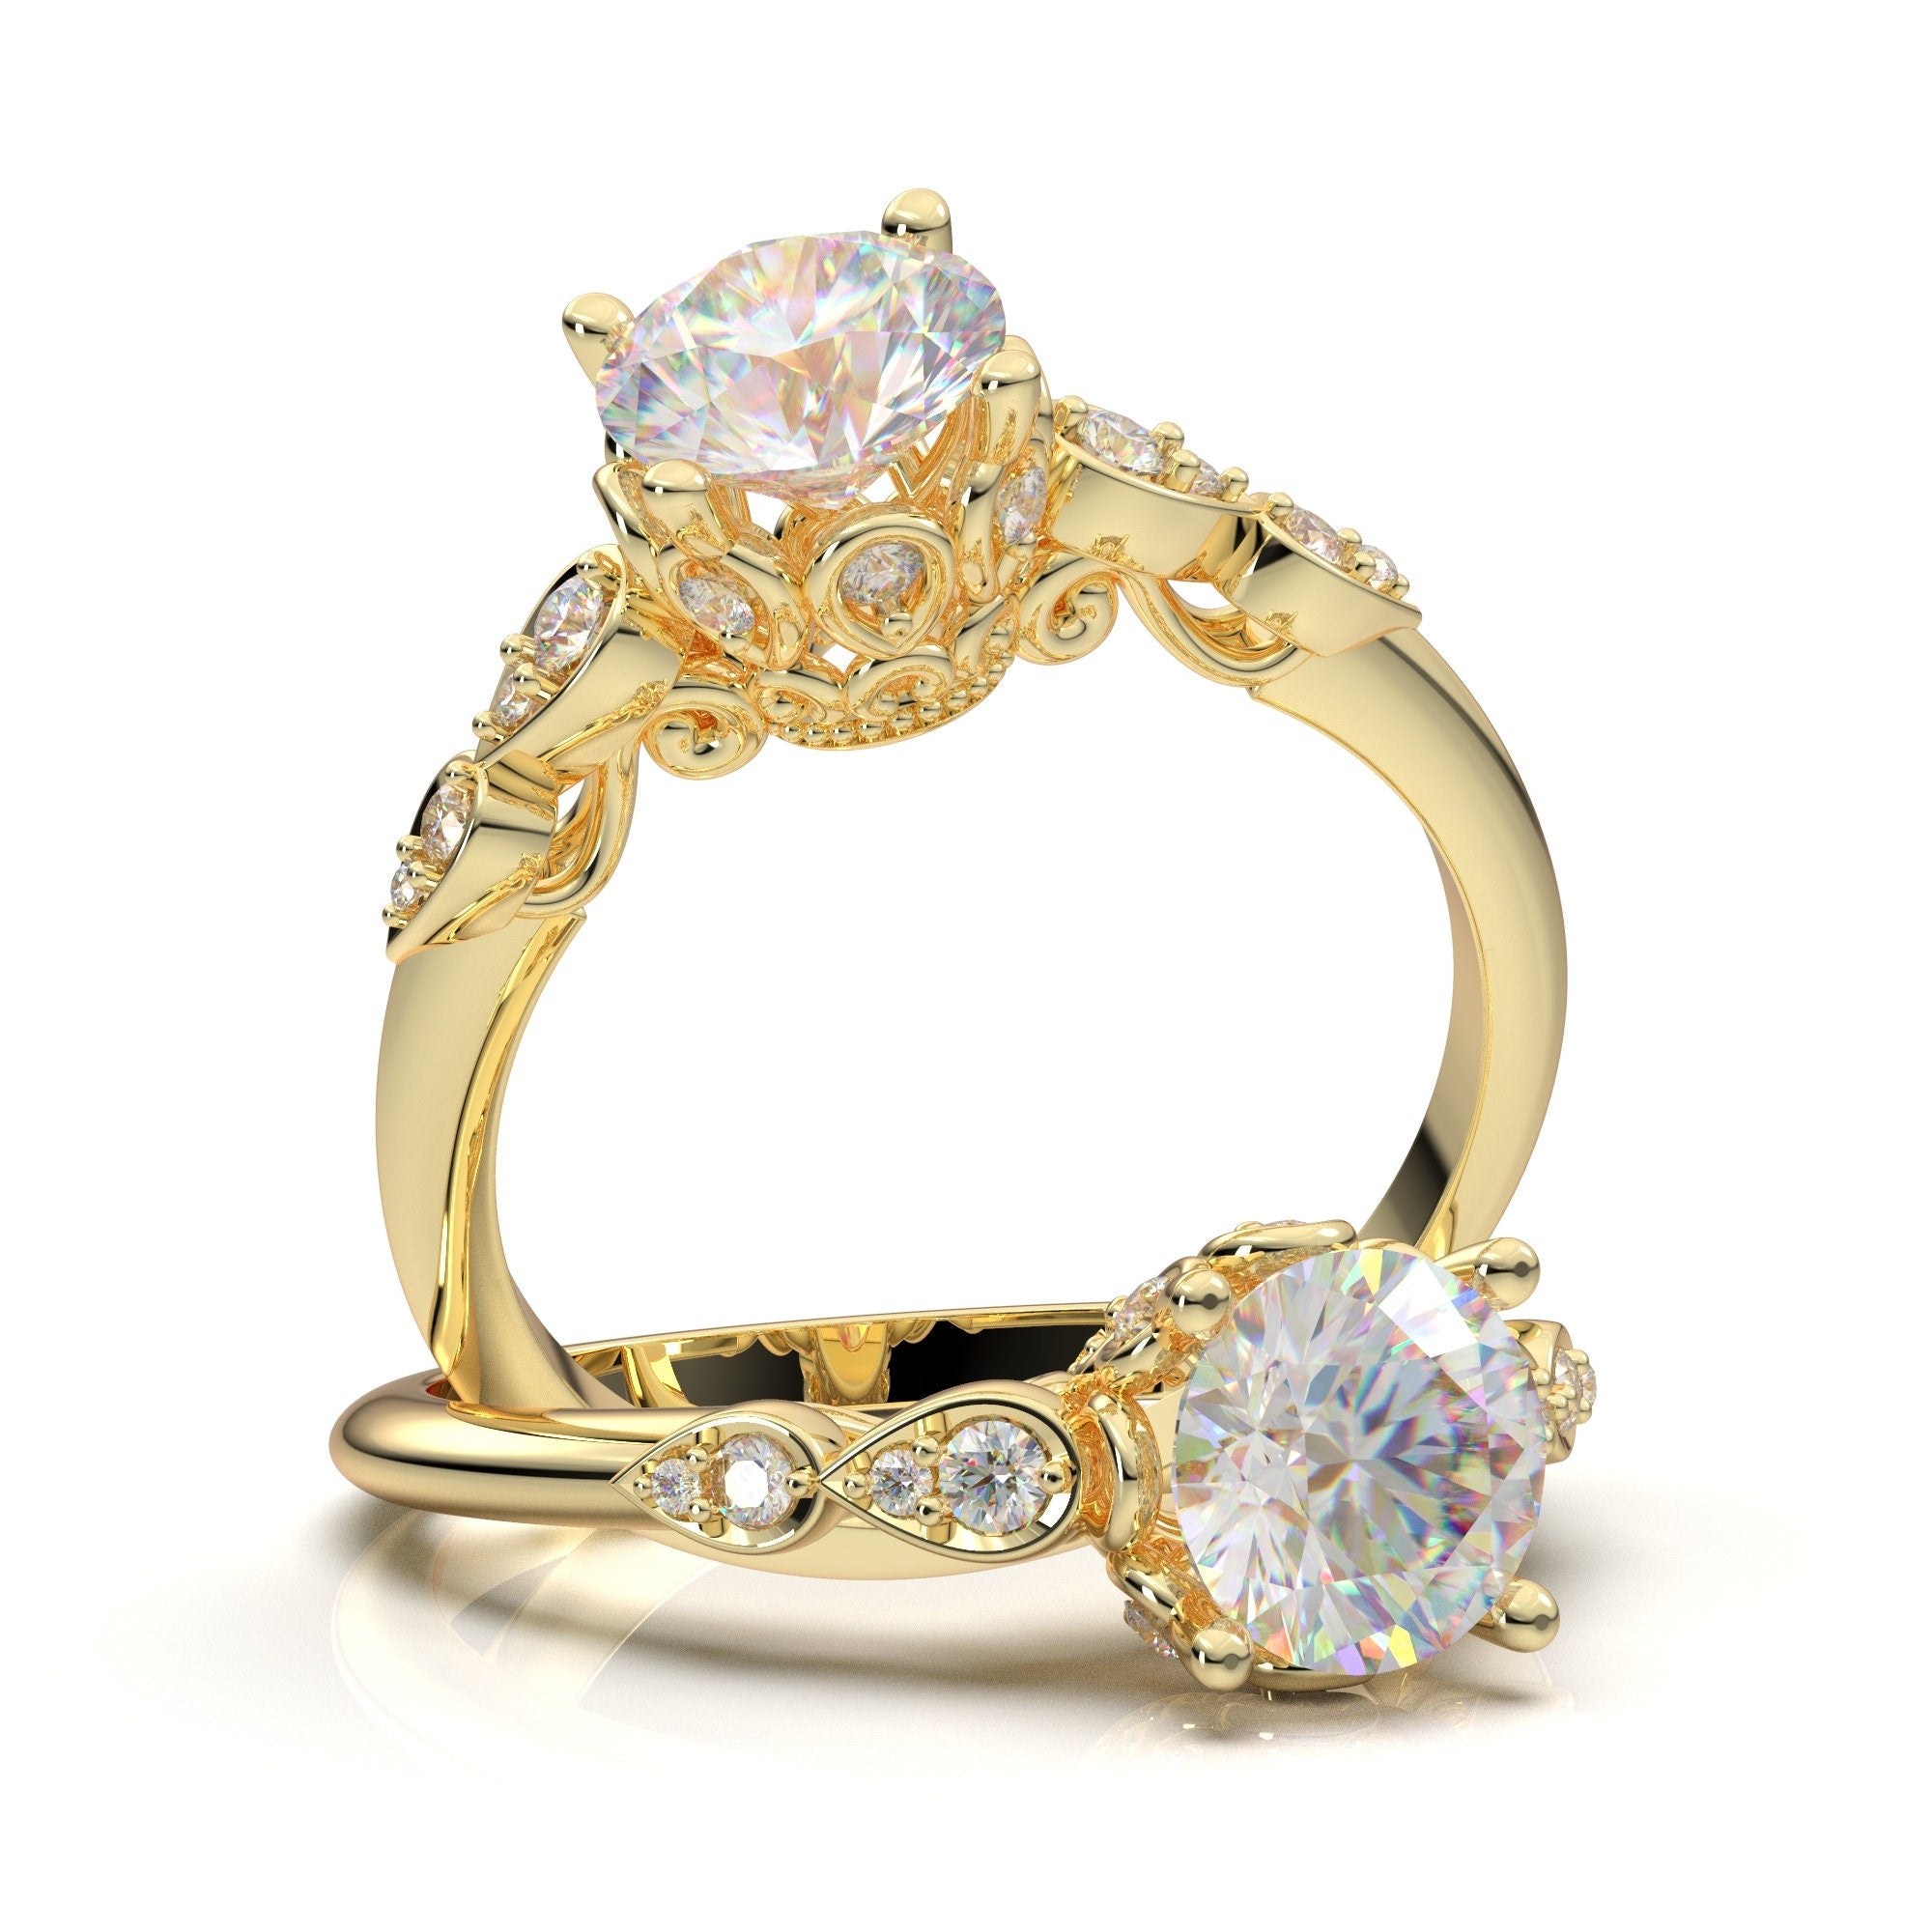 1 Carat Diamond Rose Gold Engagement Ring | KLENOTA